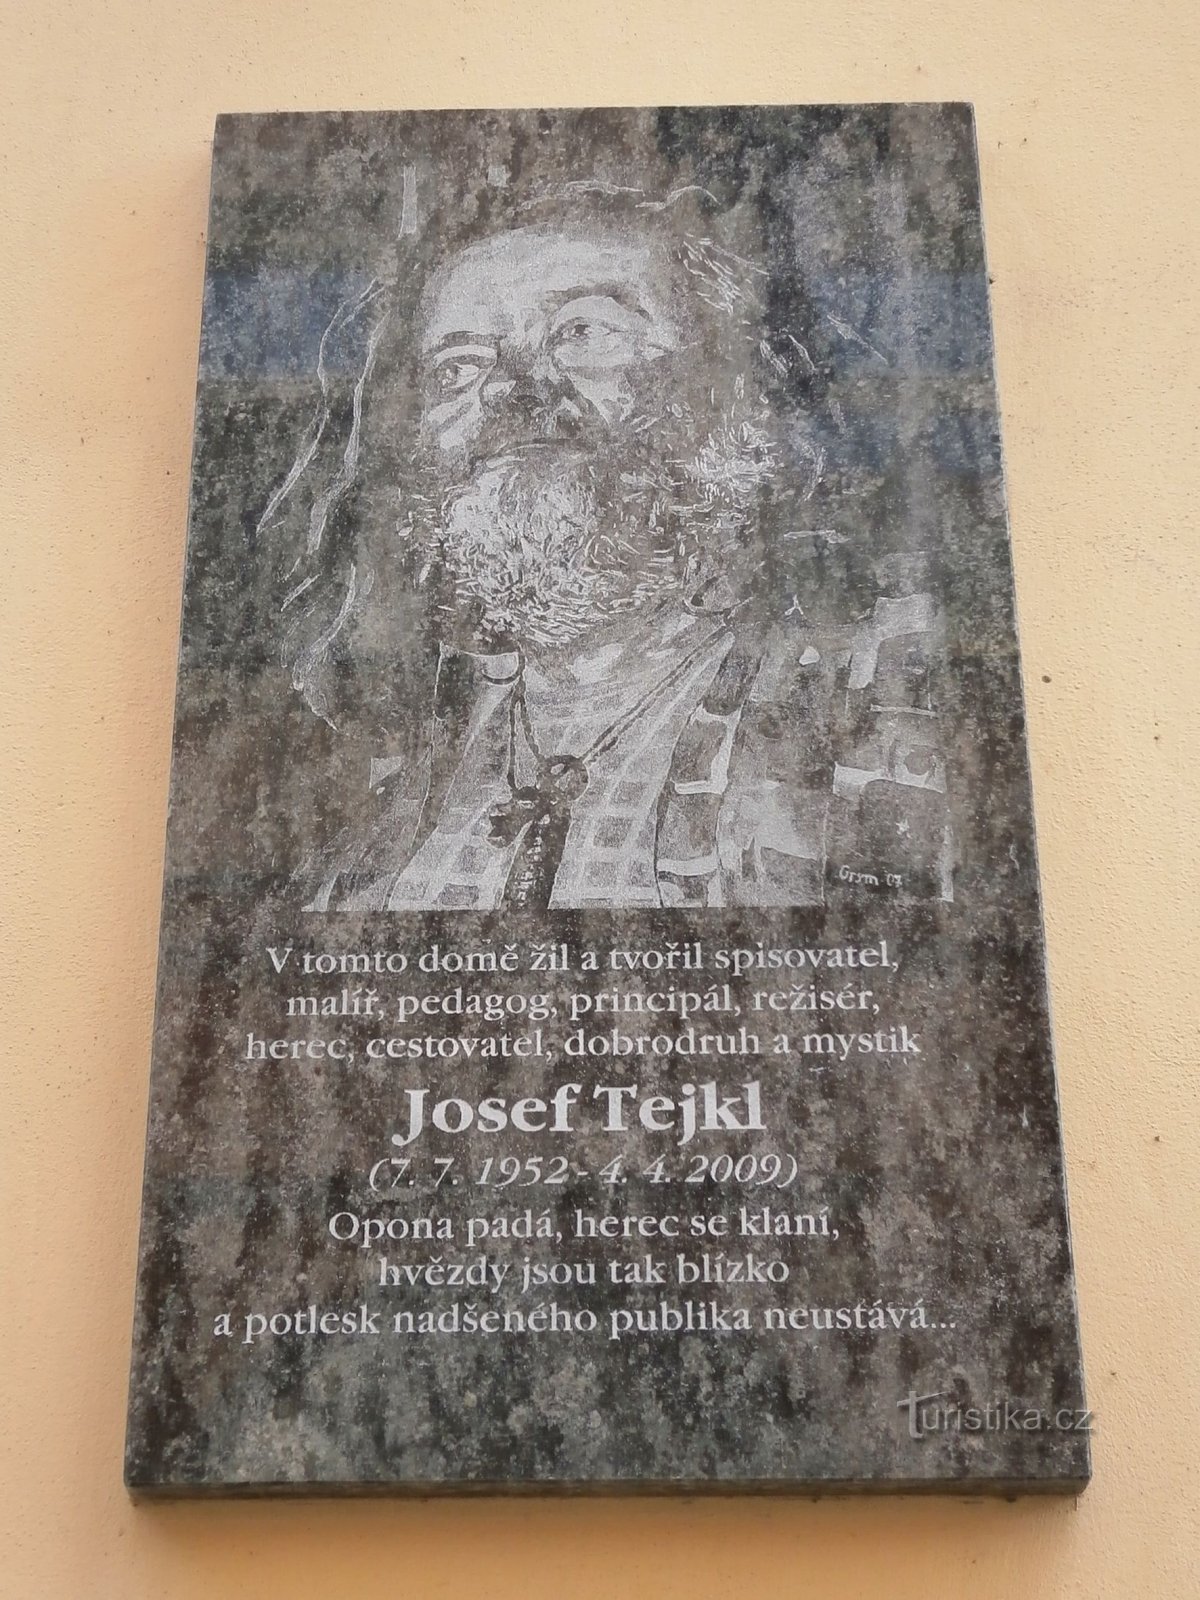 Plaque commémorative à Josef Tejkl (Hradec Králové, 15.7.2013)